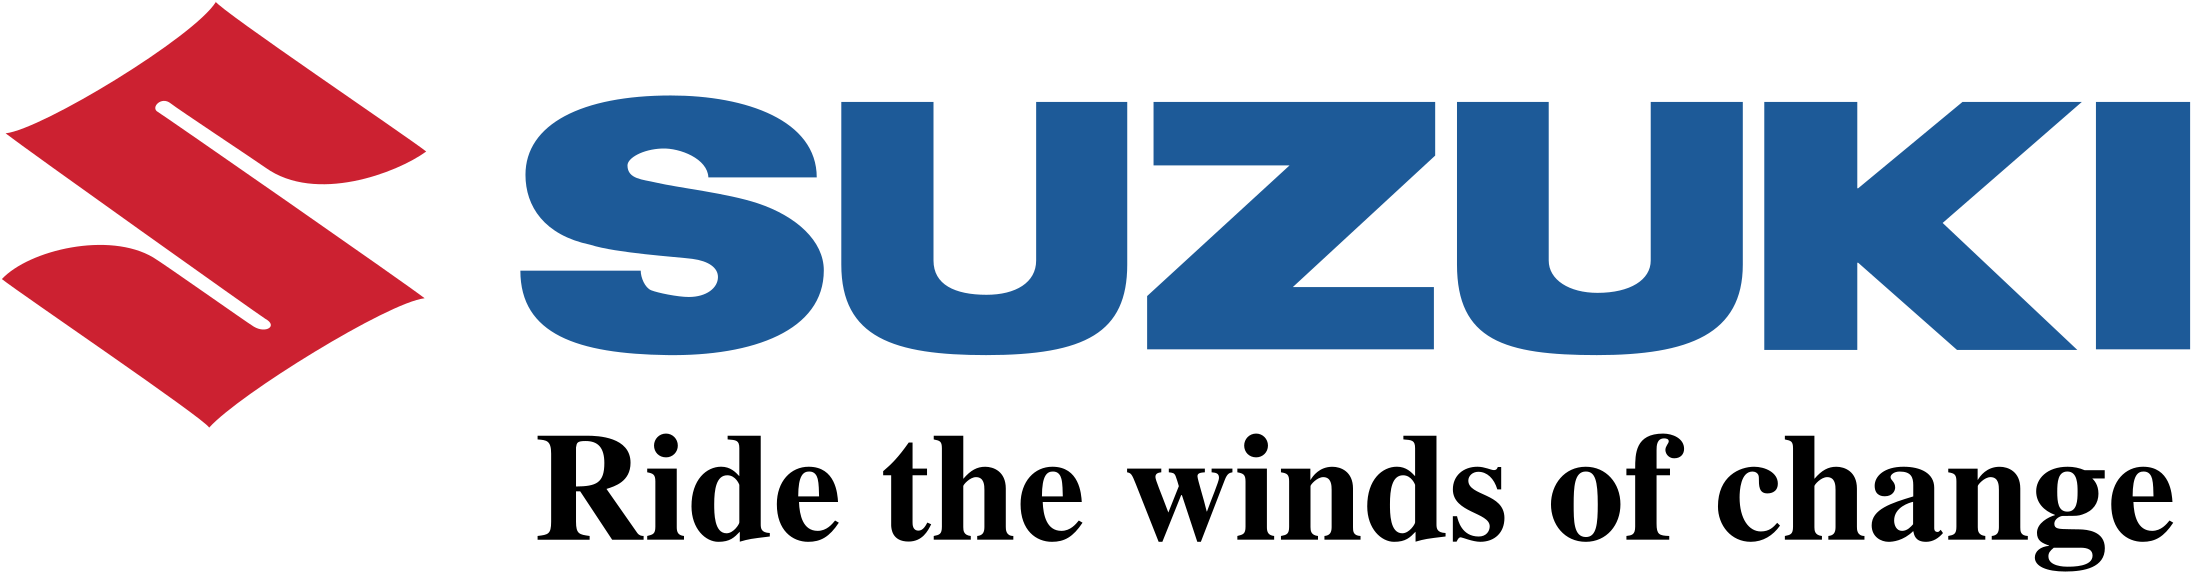 Imagem transparente do logotipo de Suzuki